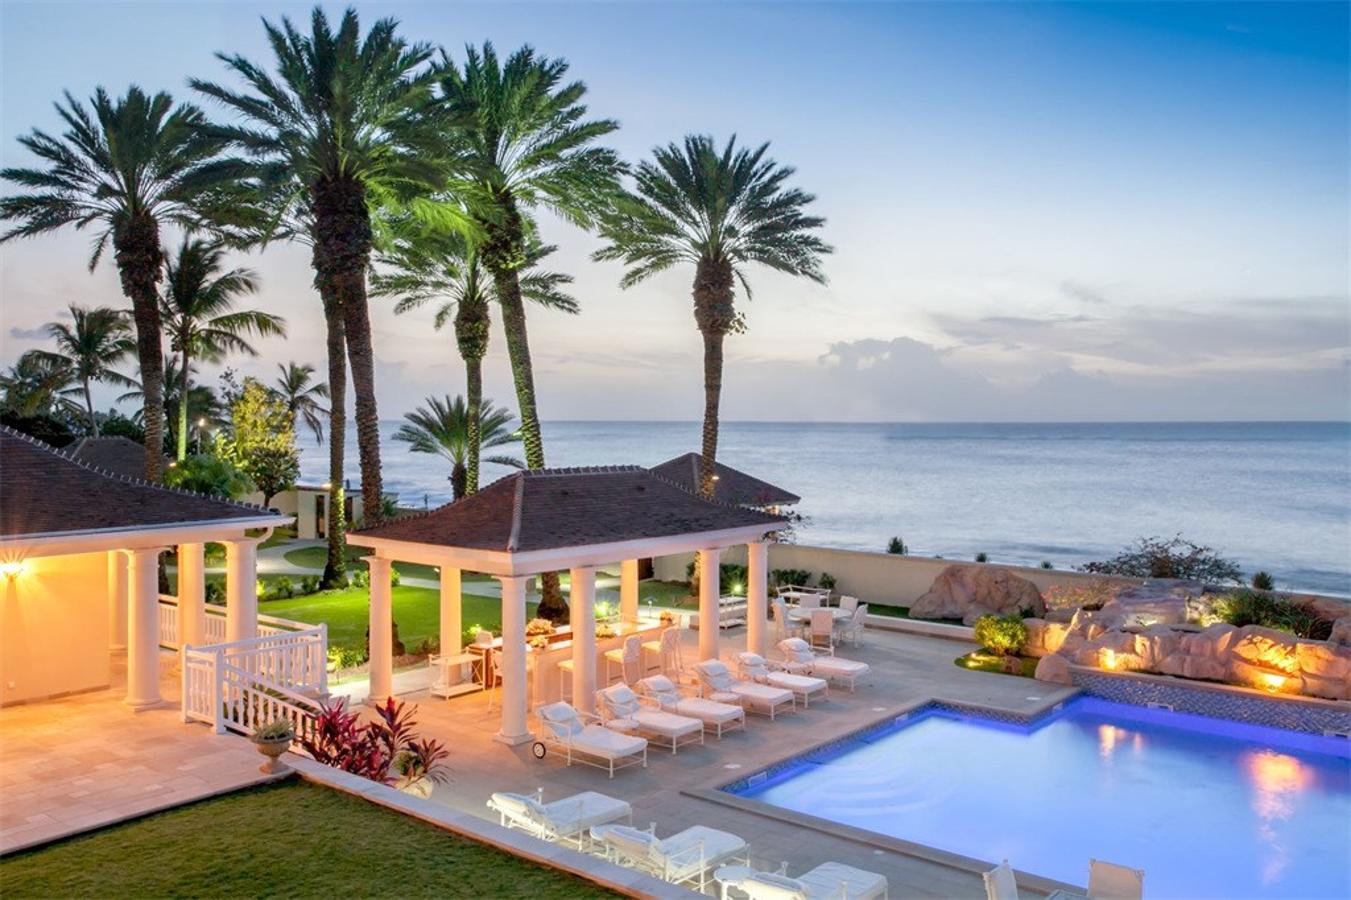 La mansión caribeña de Donald Trump reconvertida en Resort